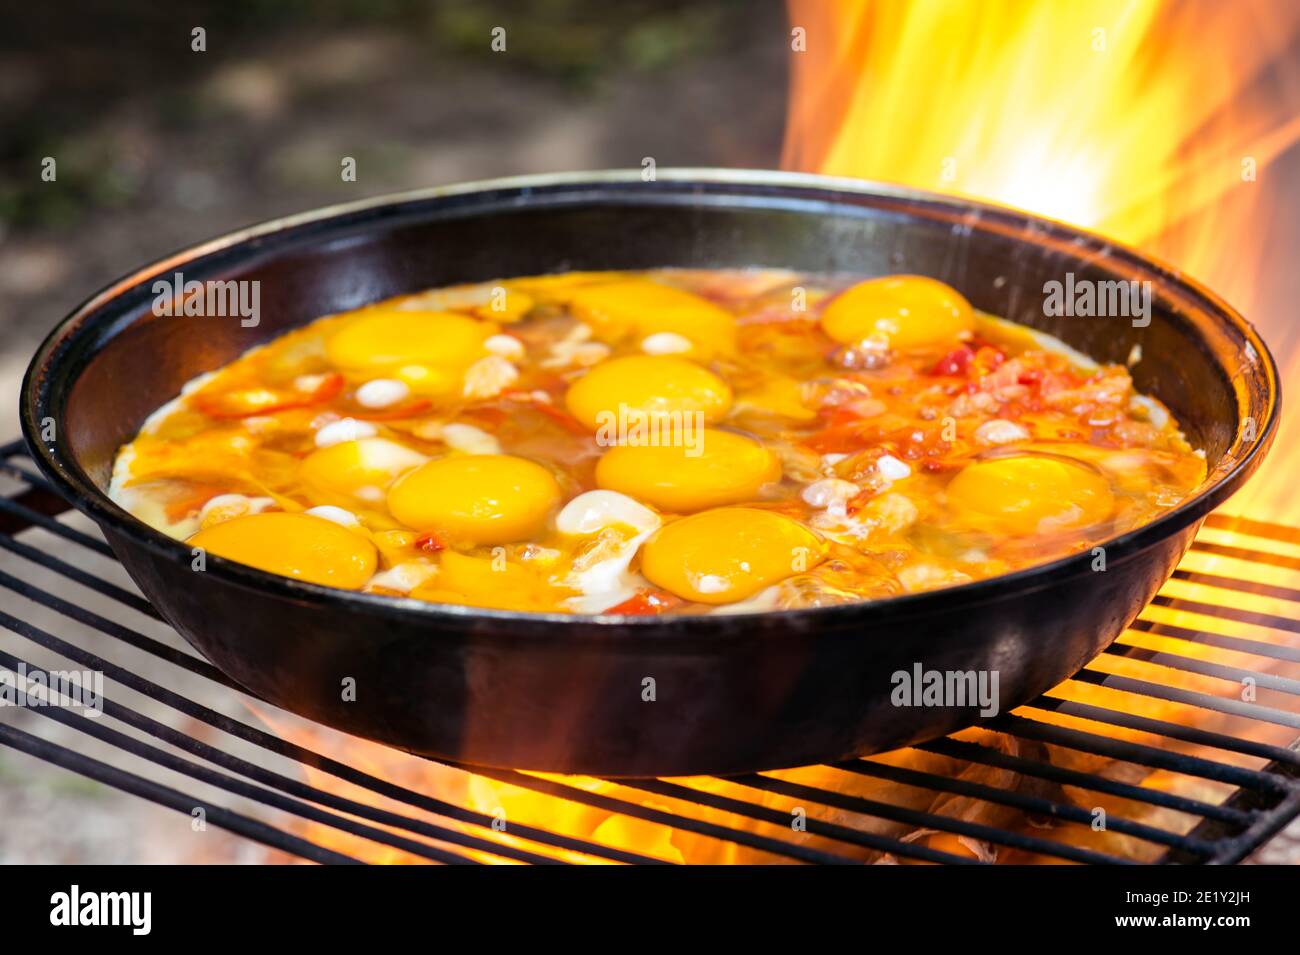 Spiegeleier mit Gemüse in einer Pfanne auf dem Grill close-up in der feurigen Flamme des Feuers. Das Konzept der Leichtigkeit des Kochens in der Natur. Selektiv f Stockfoto